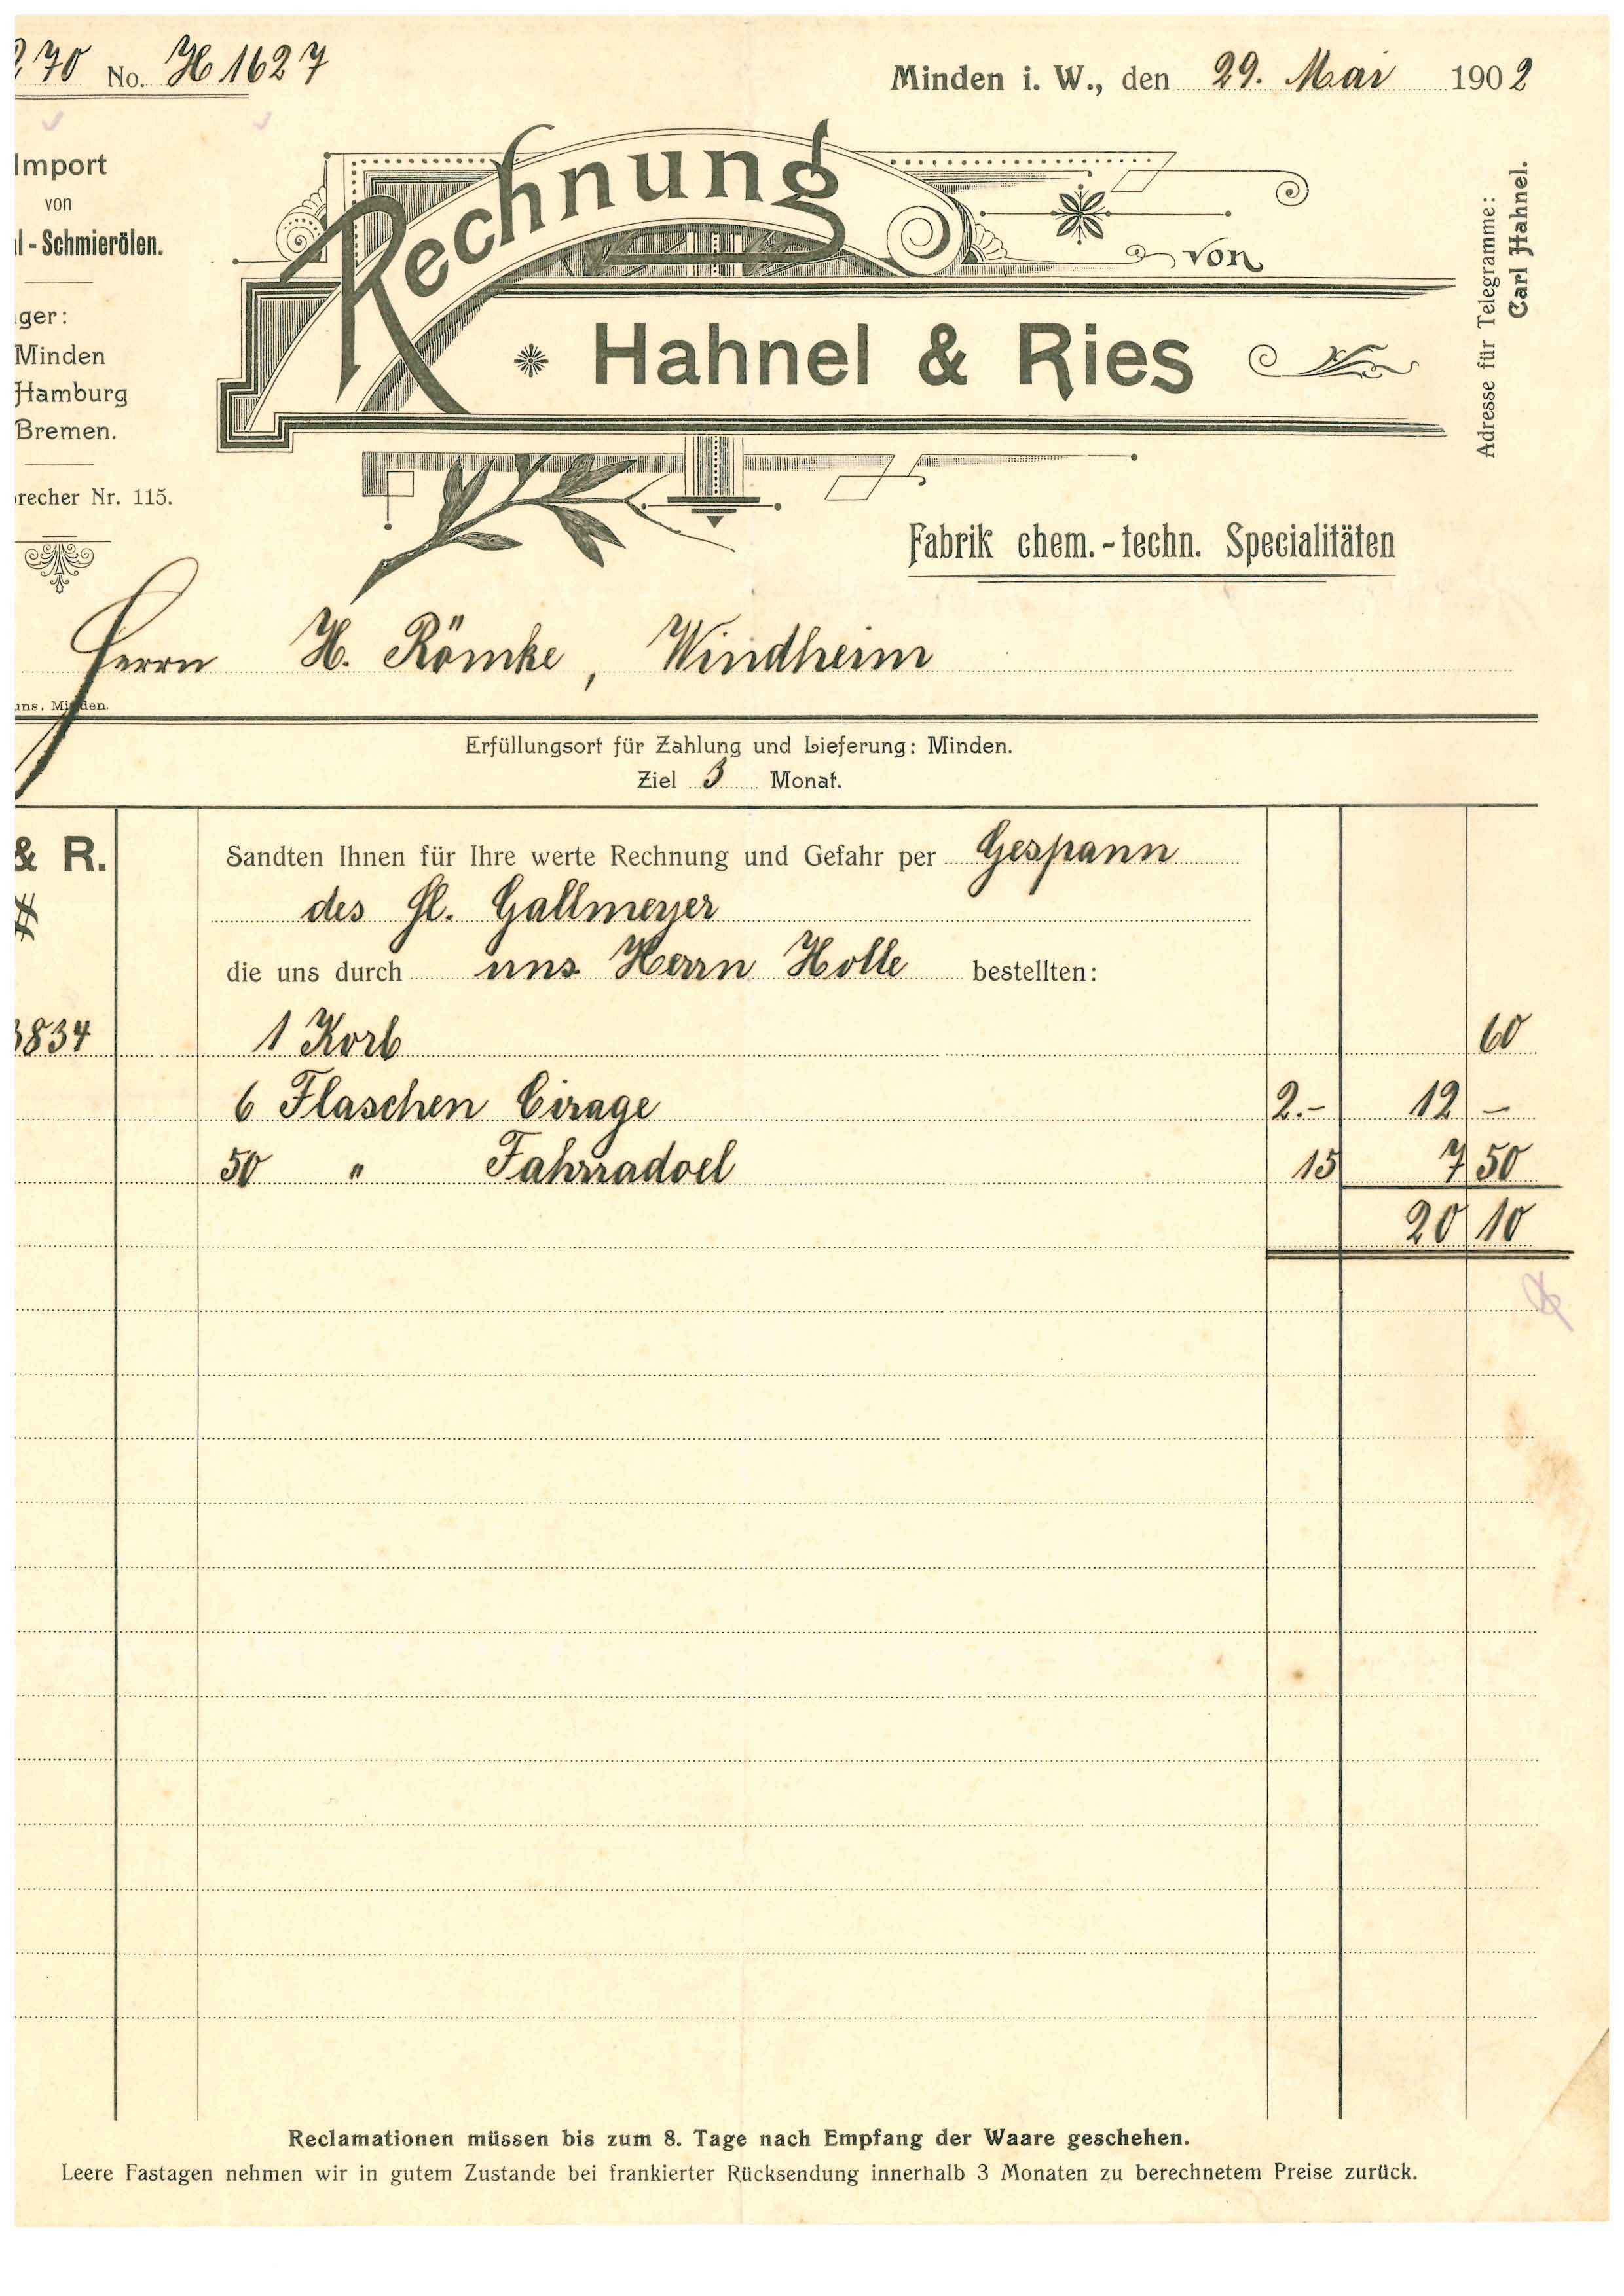 Rechnung Hahnel & Ries,1902, Minden i. W. (Mindener Museum RR-R)